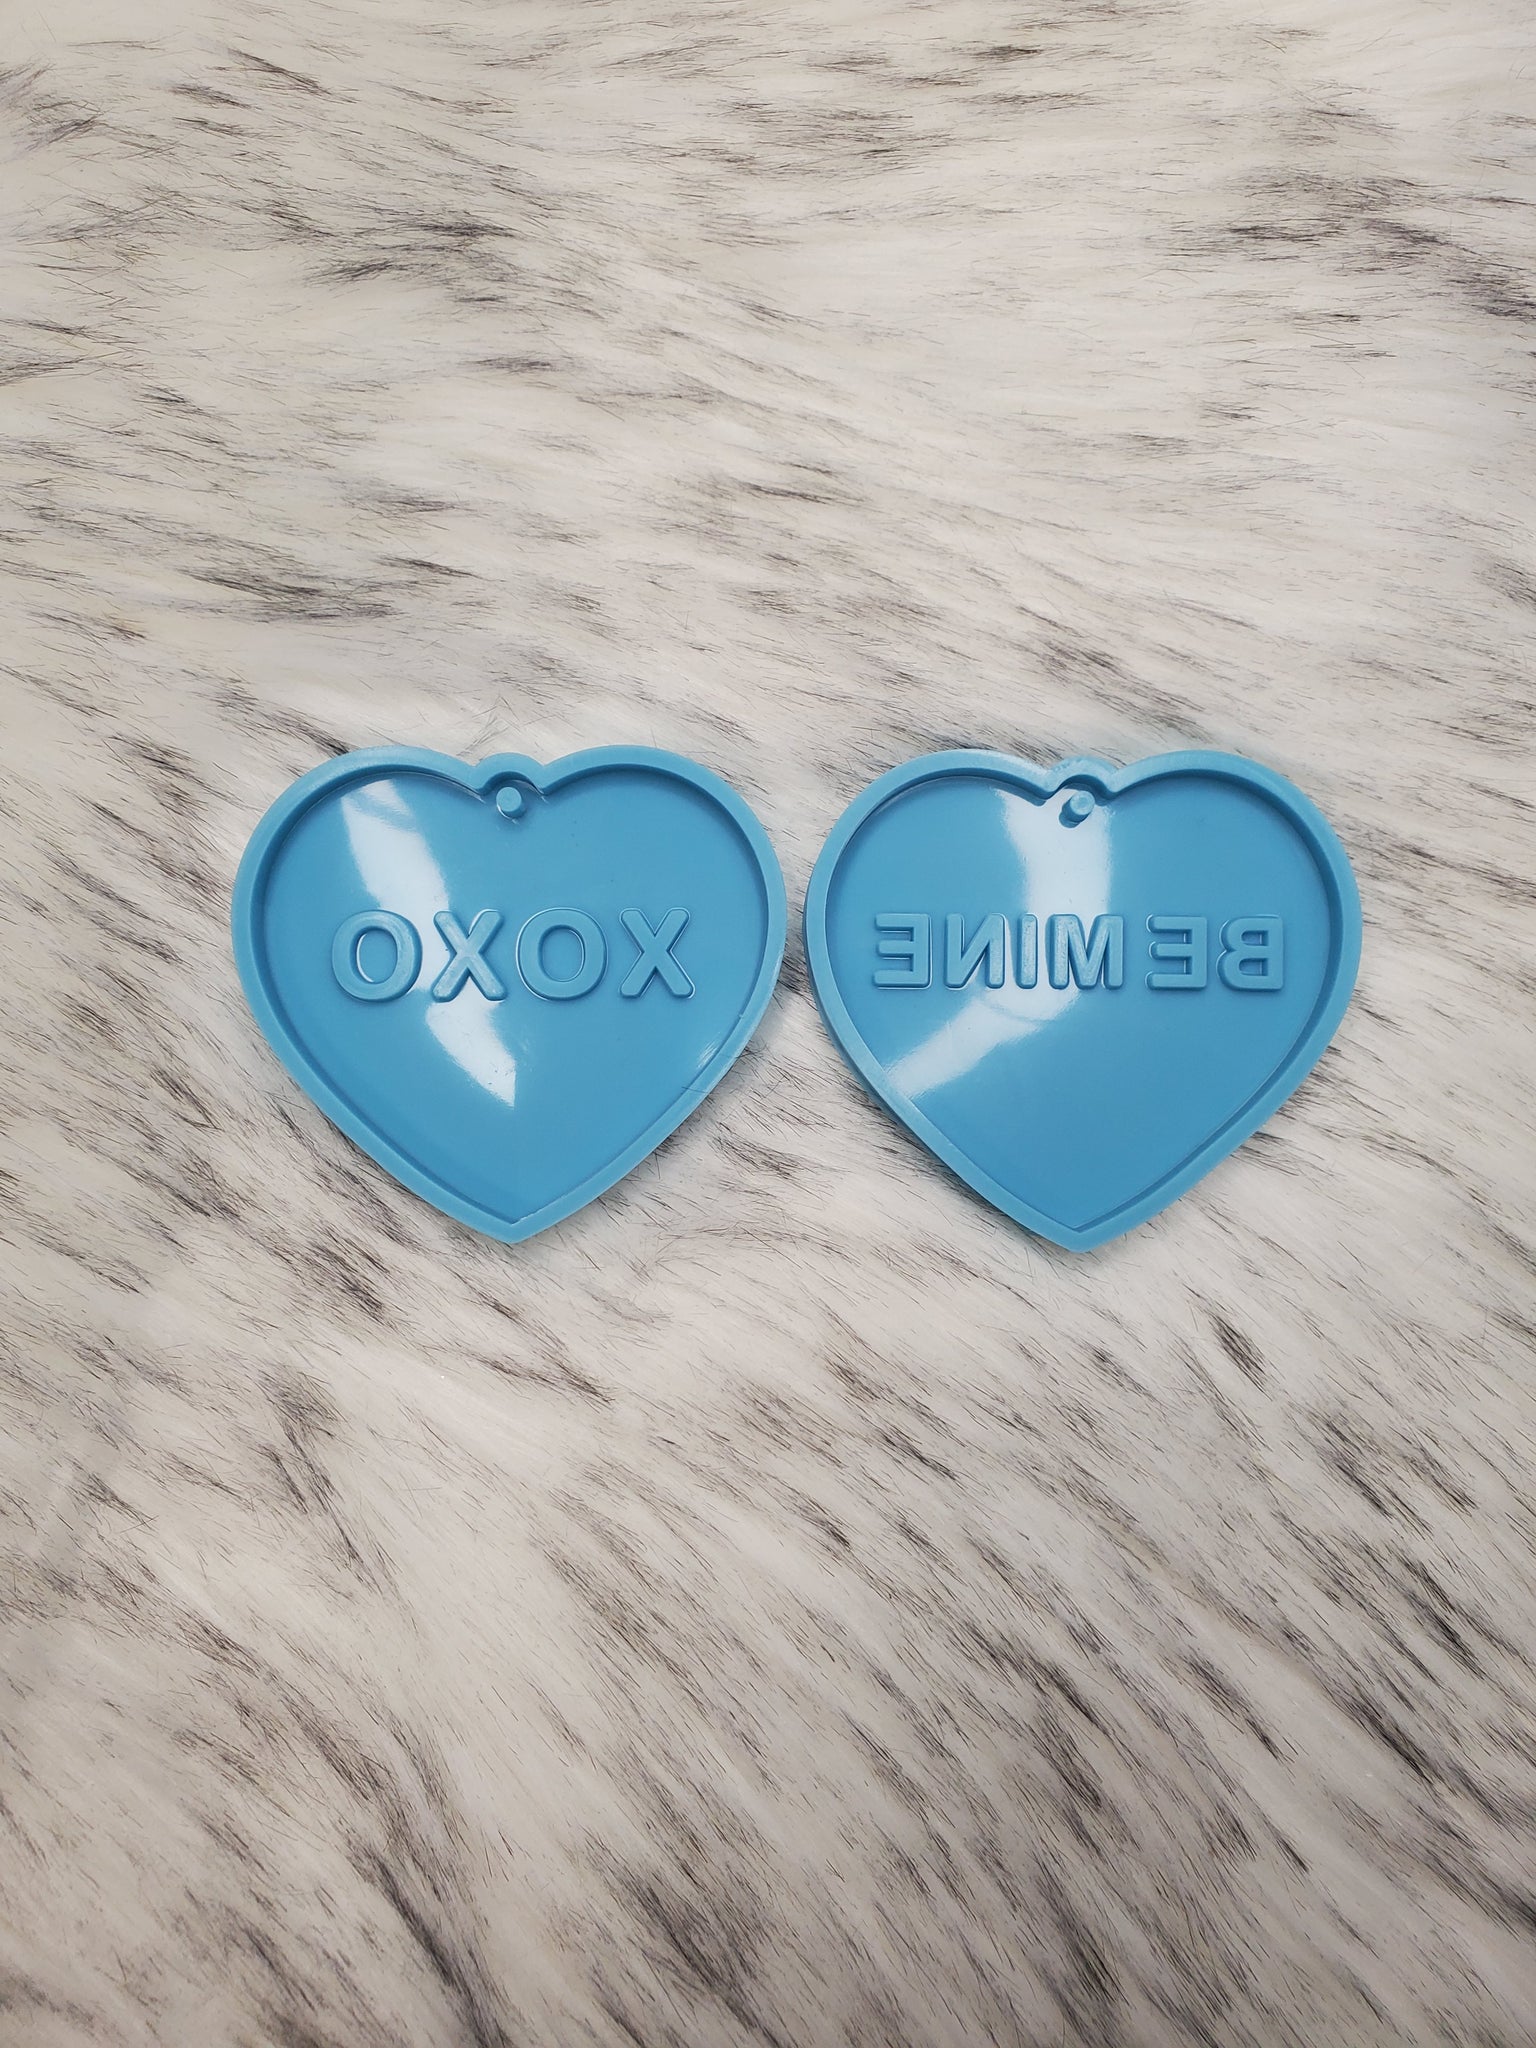 XOXO & BE MINE Heart Silicone Mold / Heart Silicone Mold / Valentines Day Mold / Heart Mold / Resin Silicone Mold / Key Chain Mold / Epoxy Mold